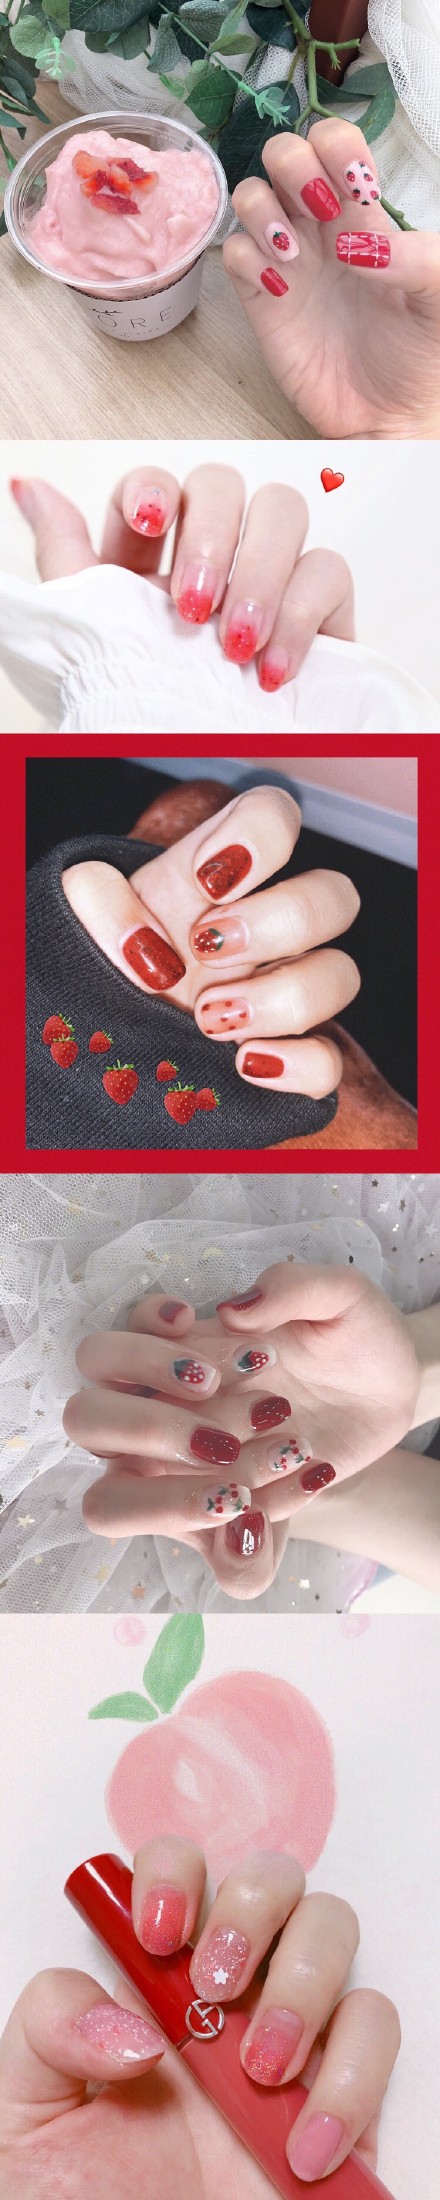 甜甜草莓美甲 承包你的整个夏天